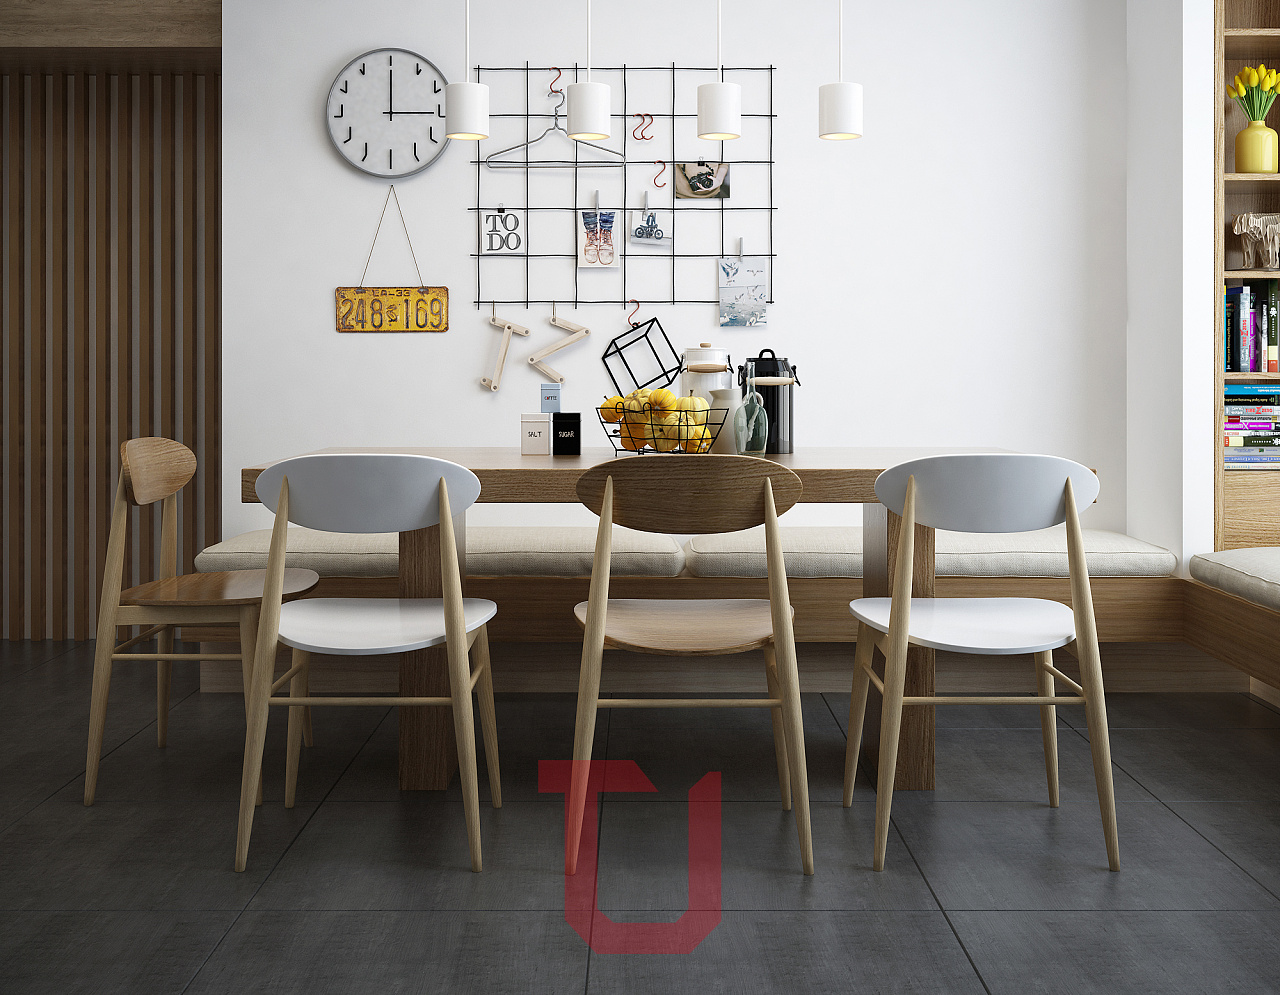 室内实木餐桌餐椅效果图 – 设计本装修效果图